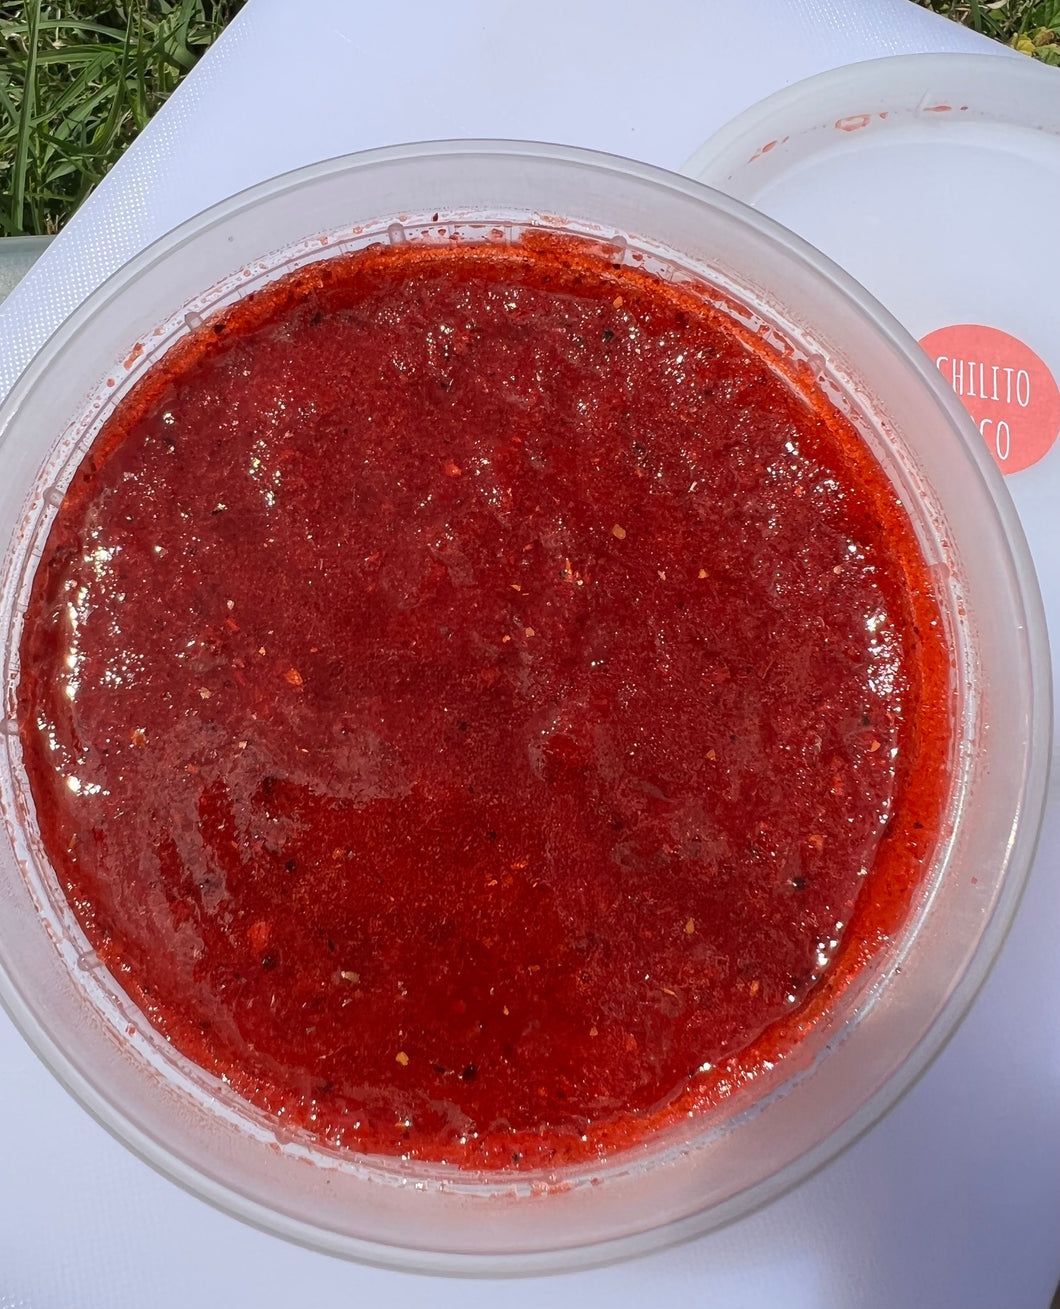 Strawberry Rim paste/ chamoy dip